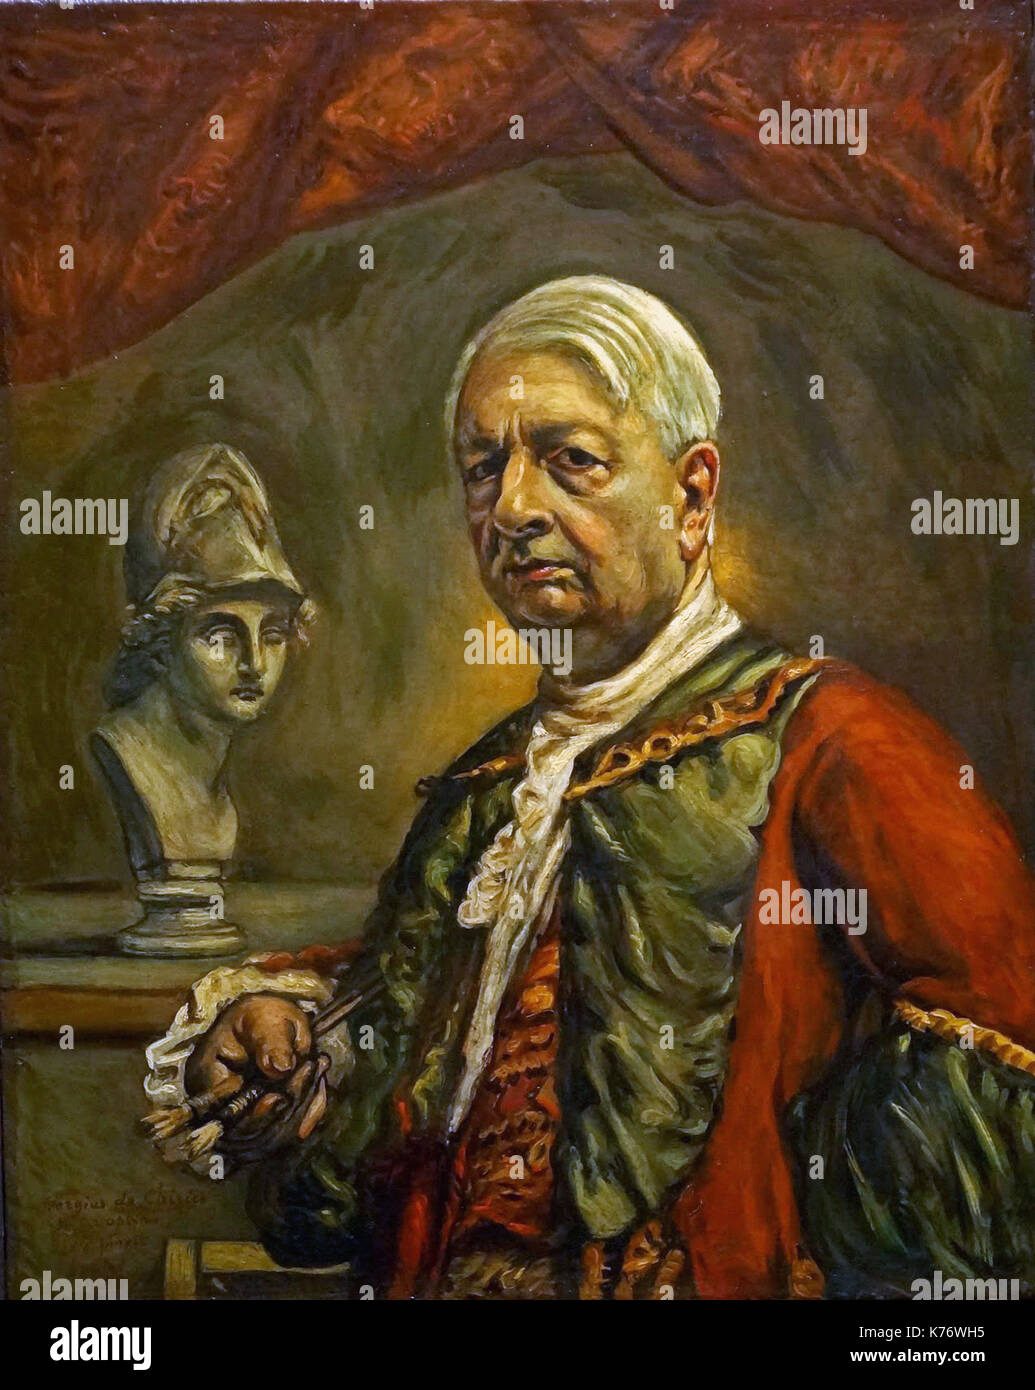 Giorgio de Chirico - Autoritratto con testa di Minerva - 1958 Stock Photo